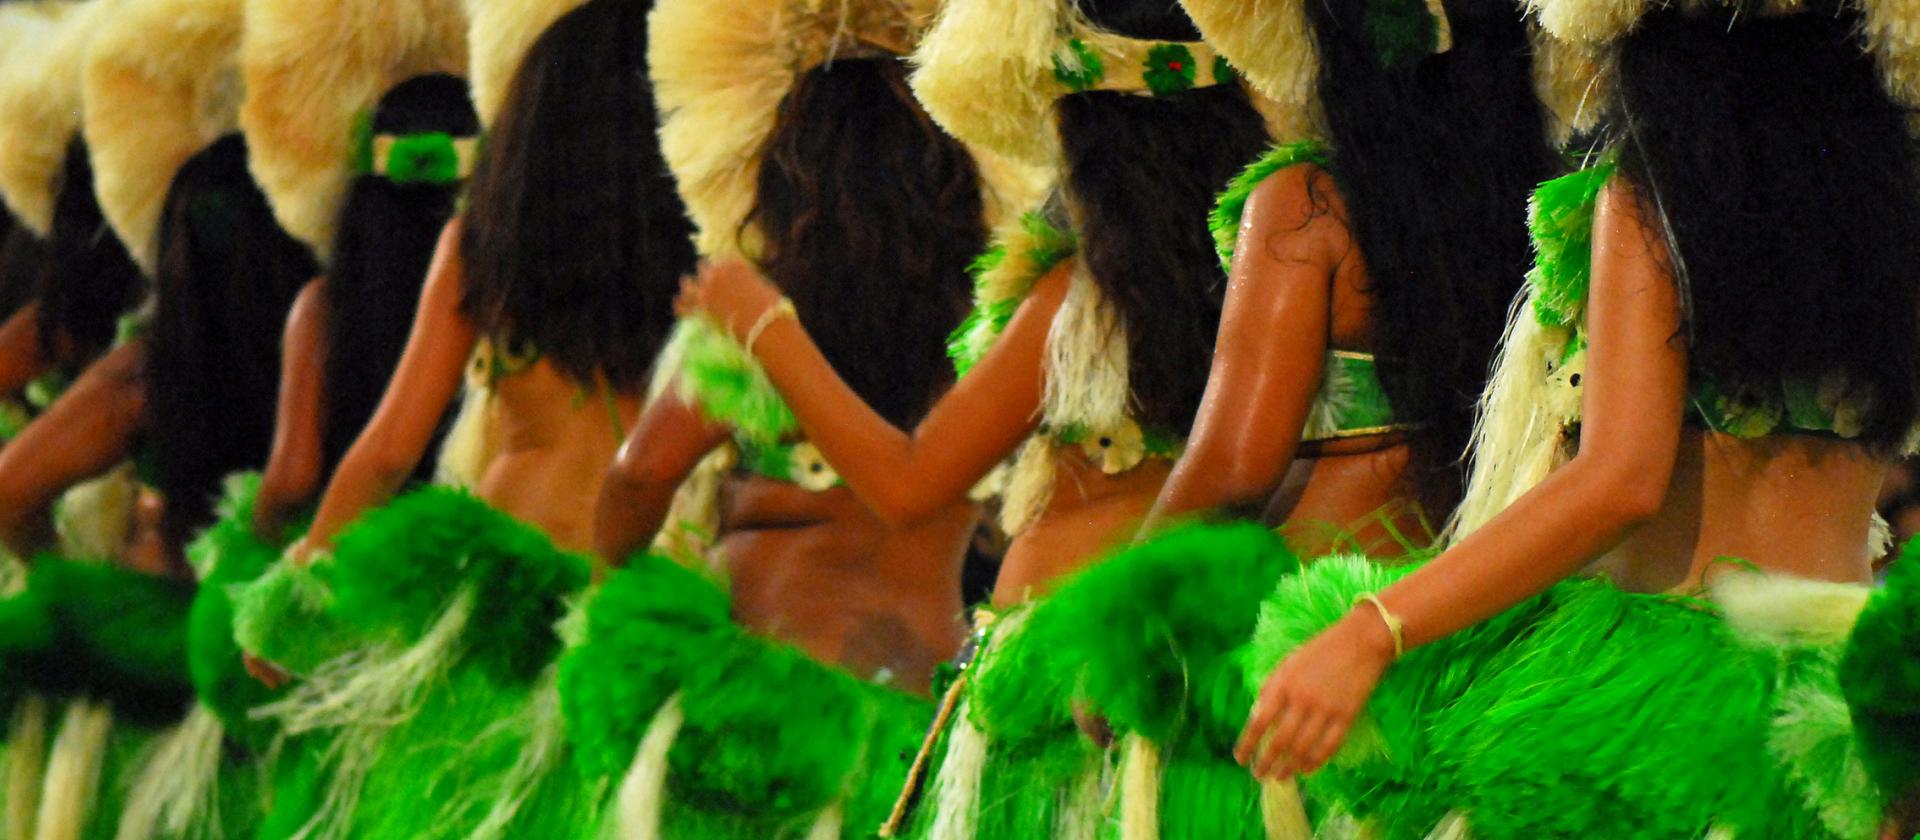 Vahine, czyli kobiety podczas tańca apa'rima